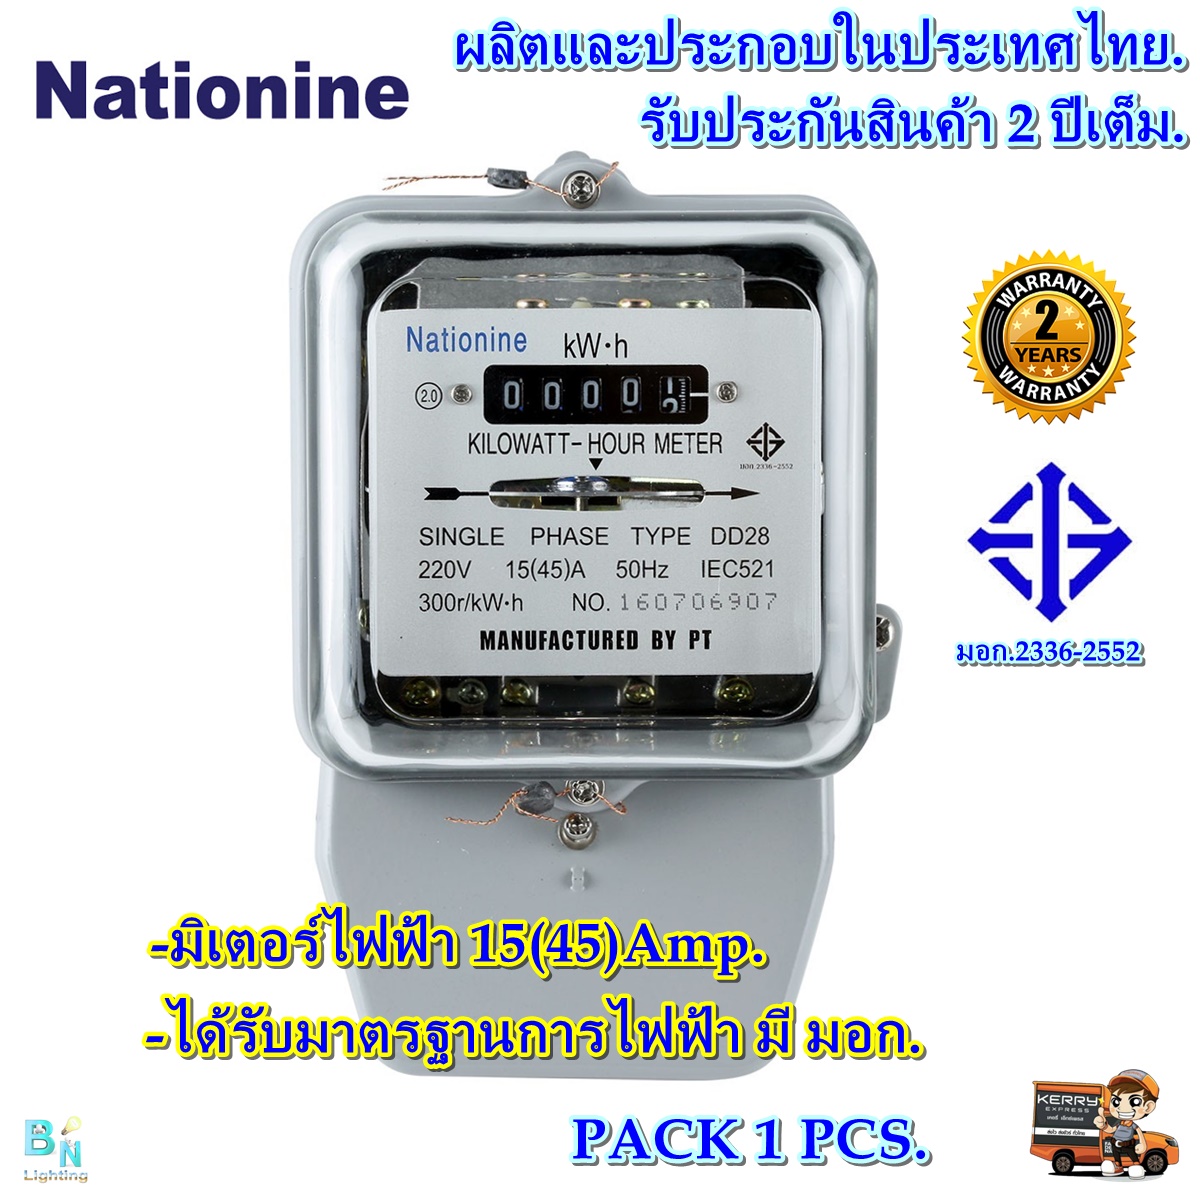 มิเตอร์ไฟฟ้า มิเตอร์วัดไฟ หม้อไฟ มิเตอร์ไฟ 2 เฟส 15A(45)A Nationine ของแท้ มีมอก.ผ่านมาตรฐานการไฟฟ้า มีหนังสือรับรองจากการไฟฟ้า.ทดลองก่อนส่งทุกตัว (แพ็ก 1 ตัว)